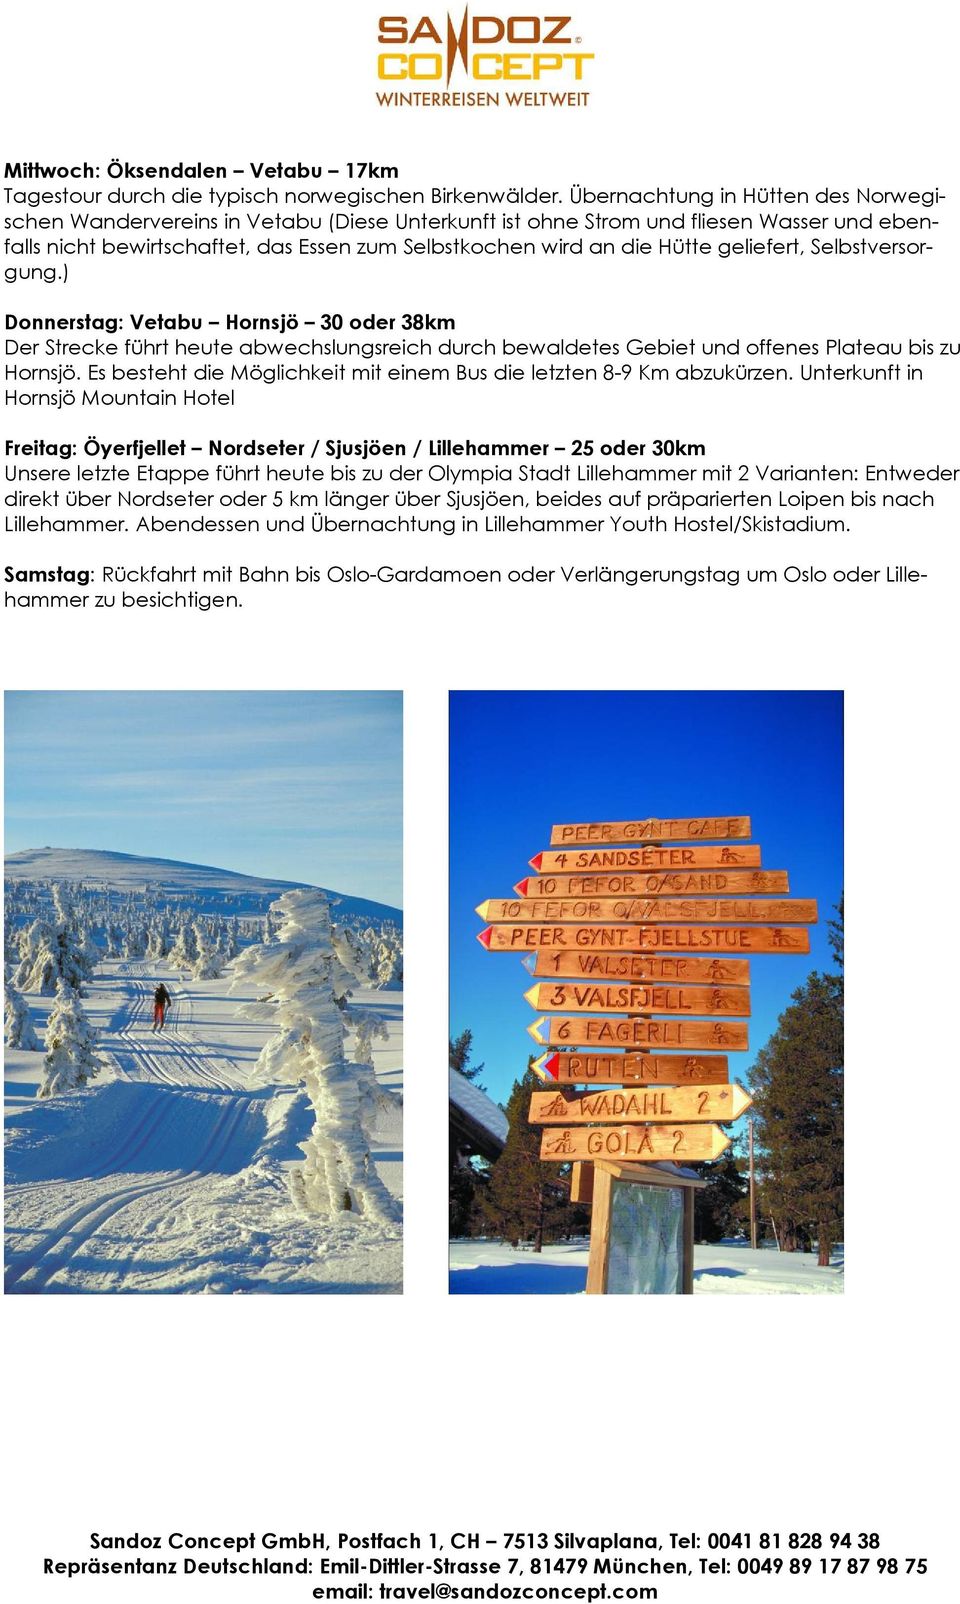 geliefert, Selbstversorgung.) Donnerstag: Vetabu Hornsjö 30 oder 38km Der Strecke führt heute abwechslungsreich durch bewaldetes Gebiet und offenes Plateau bis zu Hornsjö.